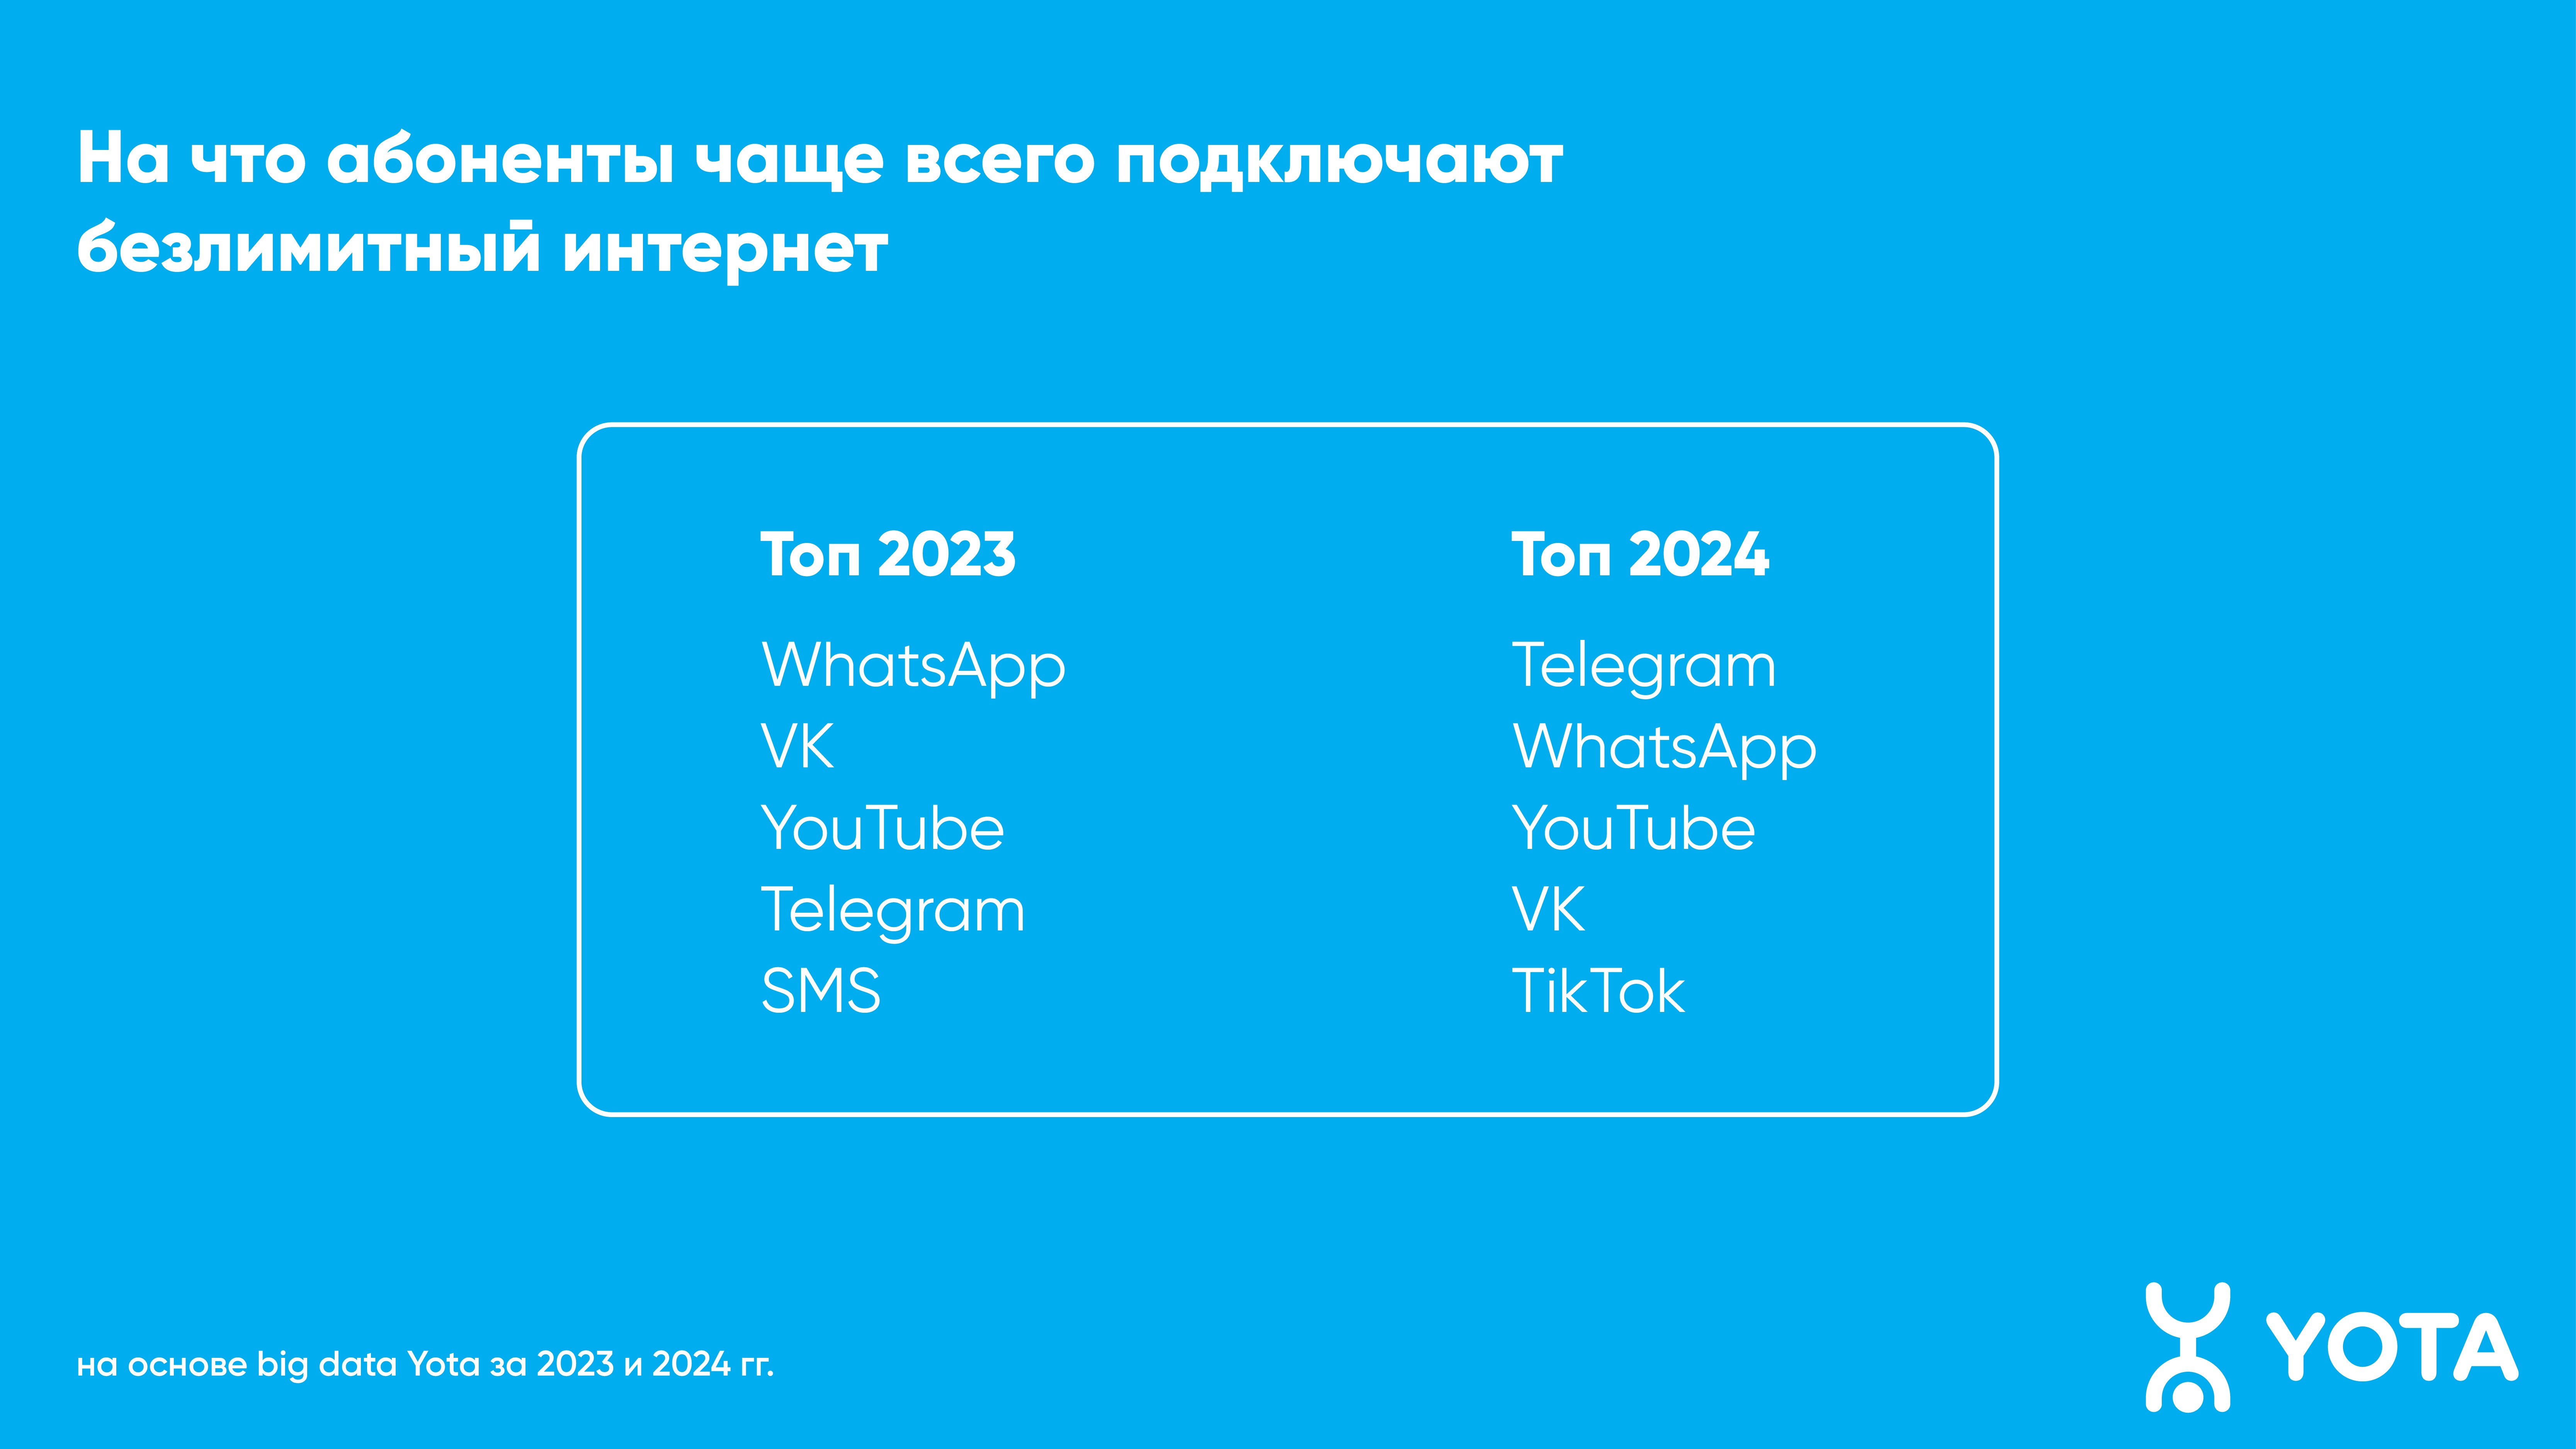 Telegram стал самым популярным приложением в Вологодской области